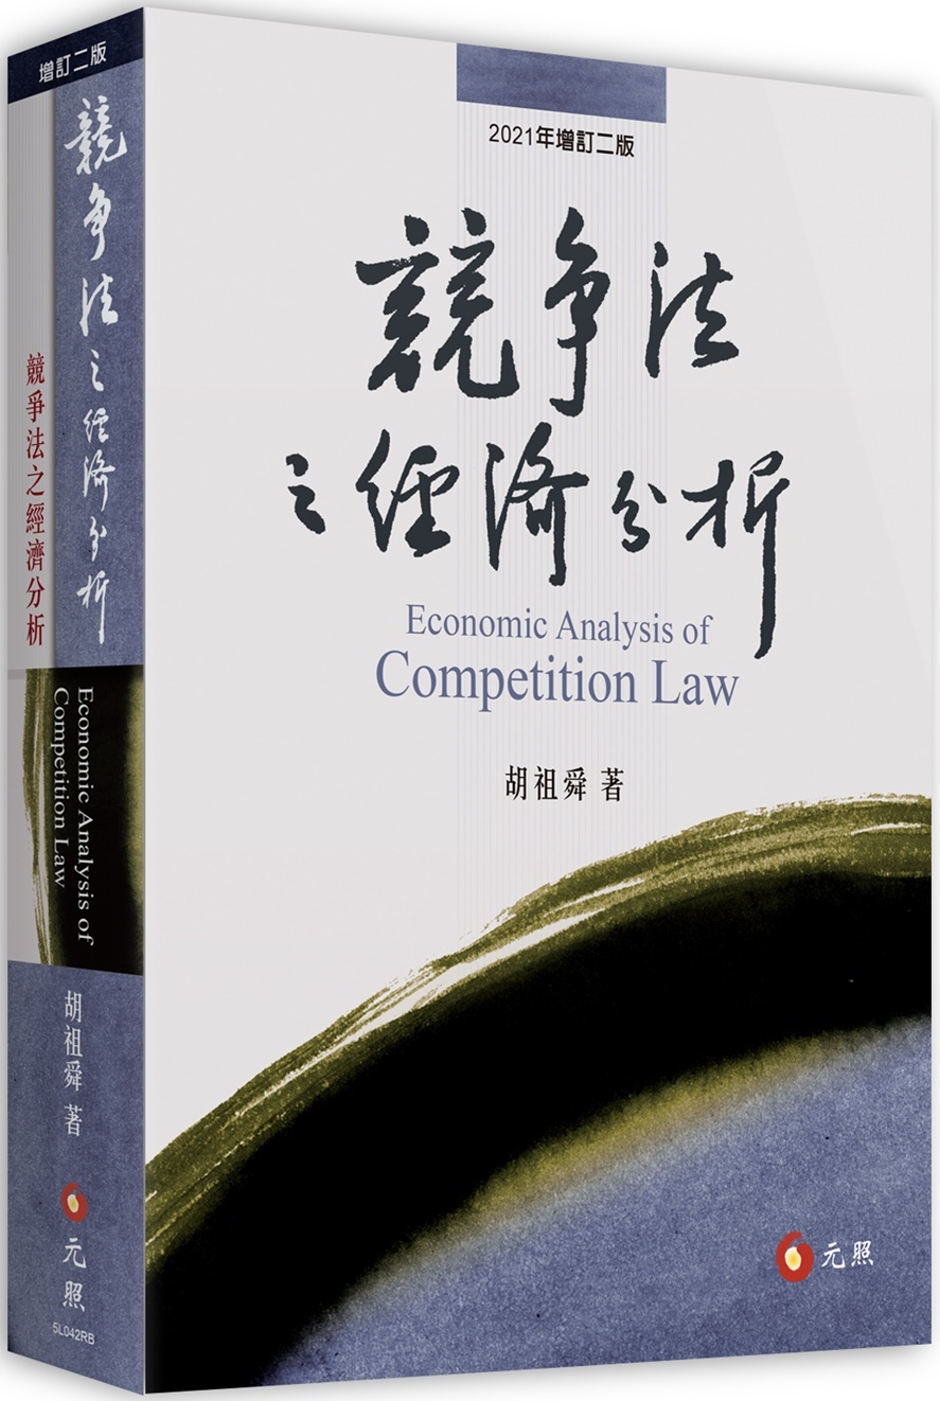 競爭法之經濟分析(二版)